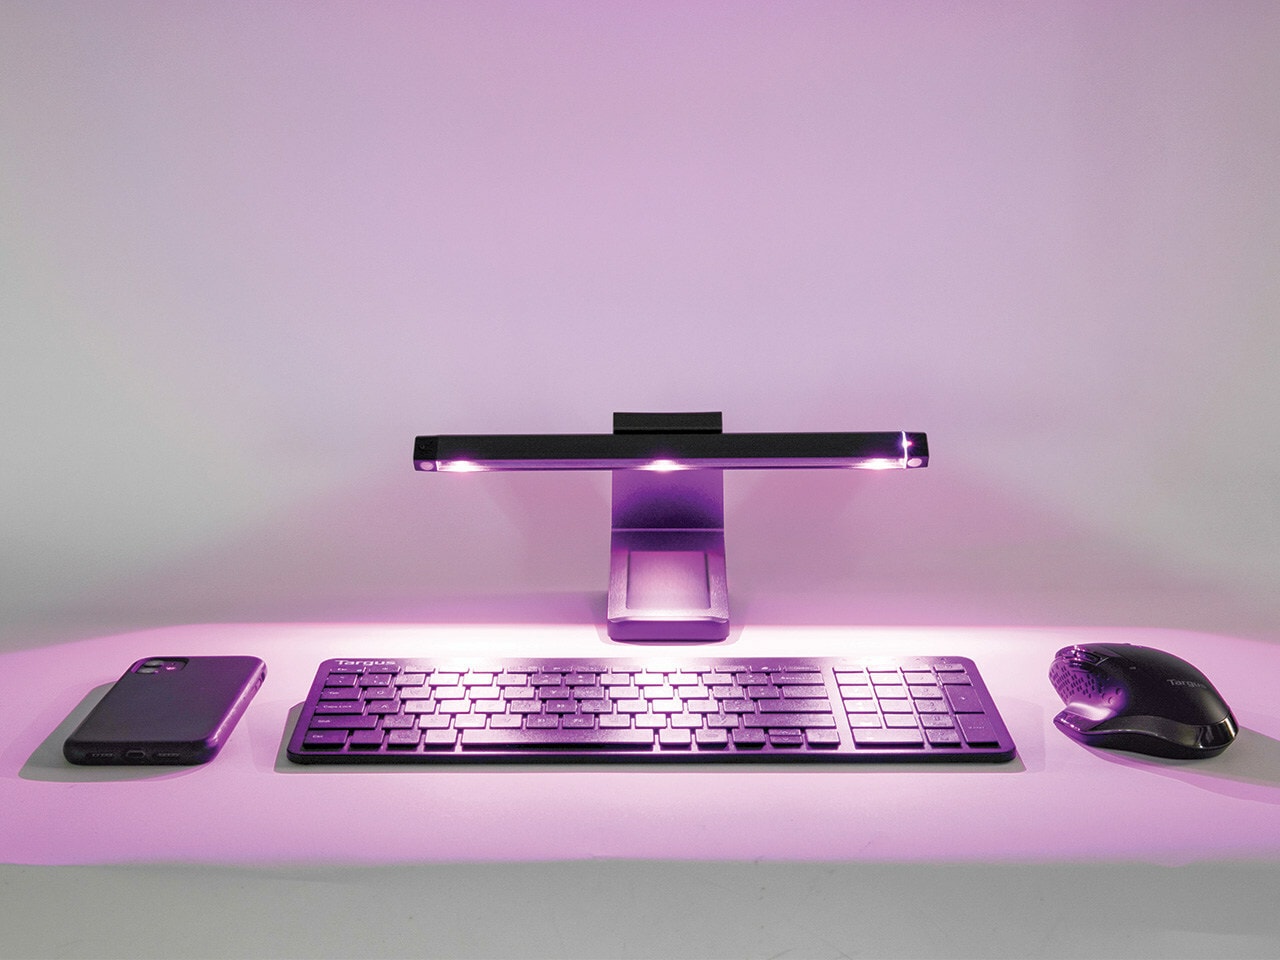 The Targus UV-C LED Disinfection Light sanitizes your desktop.